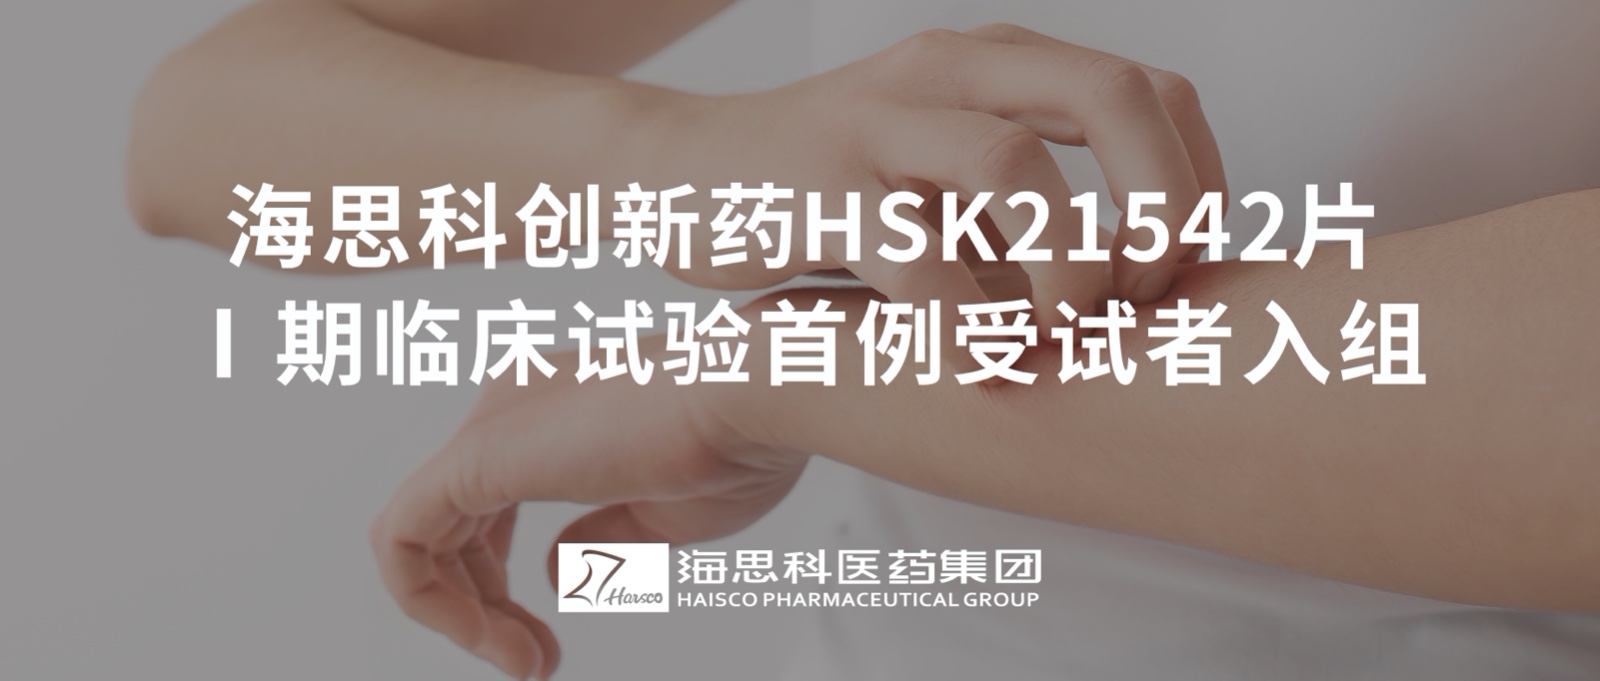 云顶国际创新药HSK21542片Ⅰ期临床试验首例受试者入组